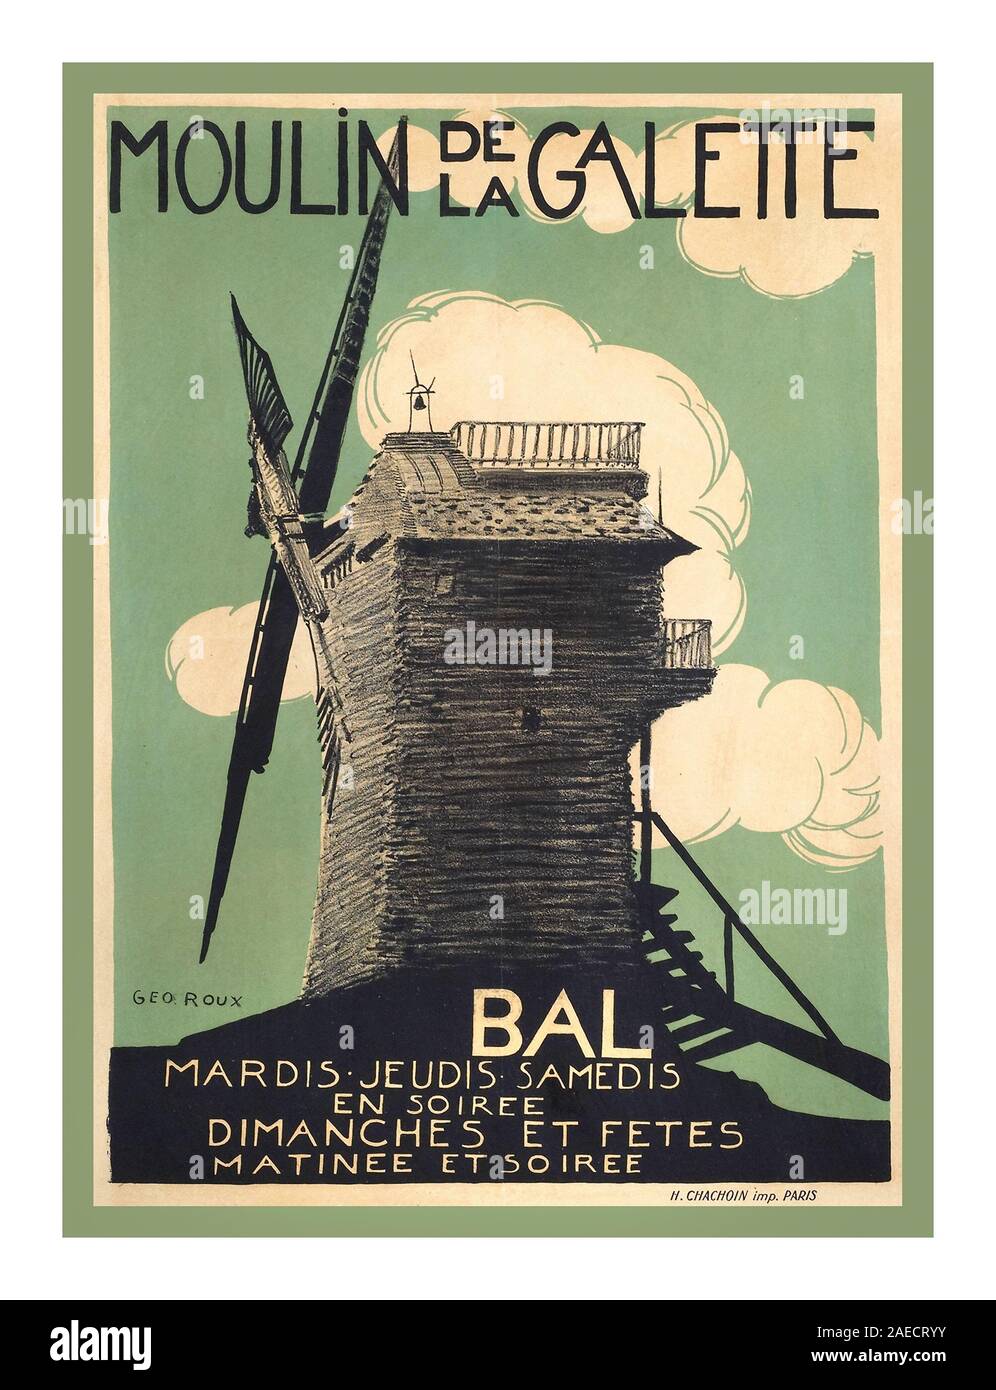 MOULIN DE LA GALETTE 1900 Vintage intrattenimento francese Poster Moulin de la Galette Montmartre Parigi Francia Le Moulin de la Galette è un mulino a vento e aziende associate situate in prossimità della parte superiore del quartiere di Montmartre a Parigi. Nel XIX secolo, Le Moulin de la Galette rappresentata la deviazione per i parigini in cerca di svago, un bicchiere di vino e pane fatto con farina macinata dal mulino a vento. Artisti come Renoir, Van Gogh e Pissarro hanno immortalato Le Moulin de la Galette il più notevole era il Renoir pittura festosa, Bal du moulin de la Galette. Foto Stock